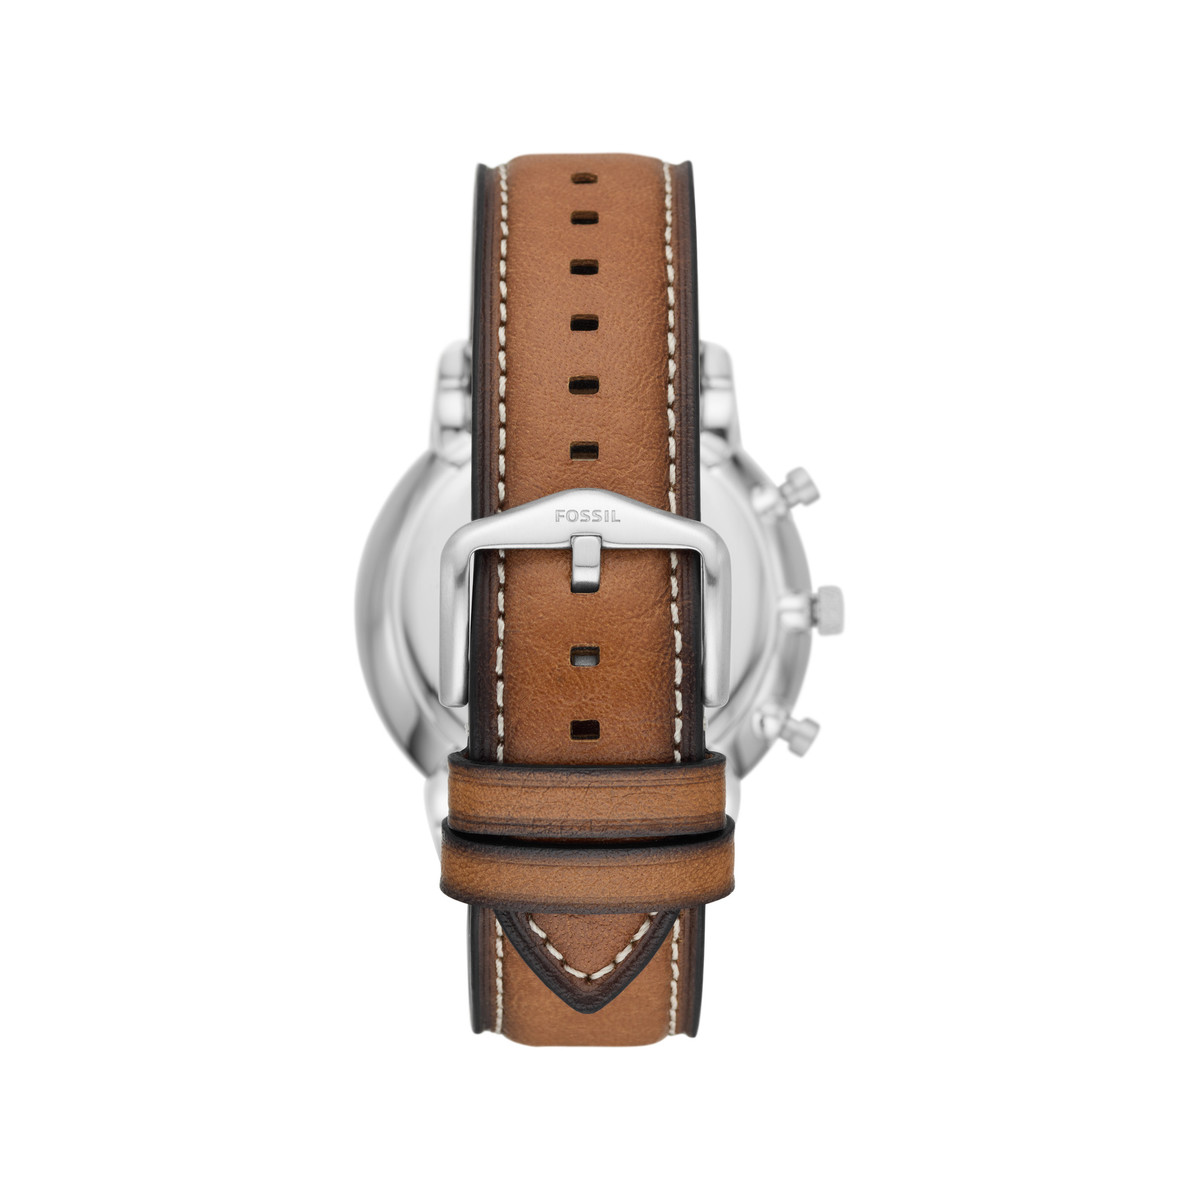 Montre FOSSIL Neutra homme chronographe, bracelet cuir marron - vue 3